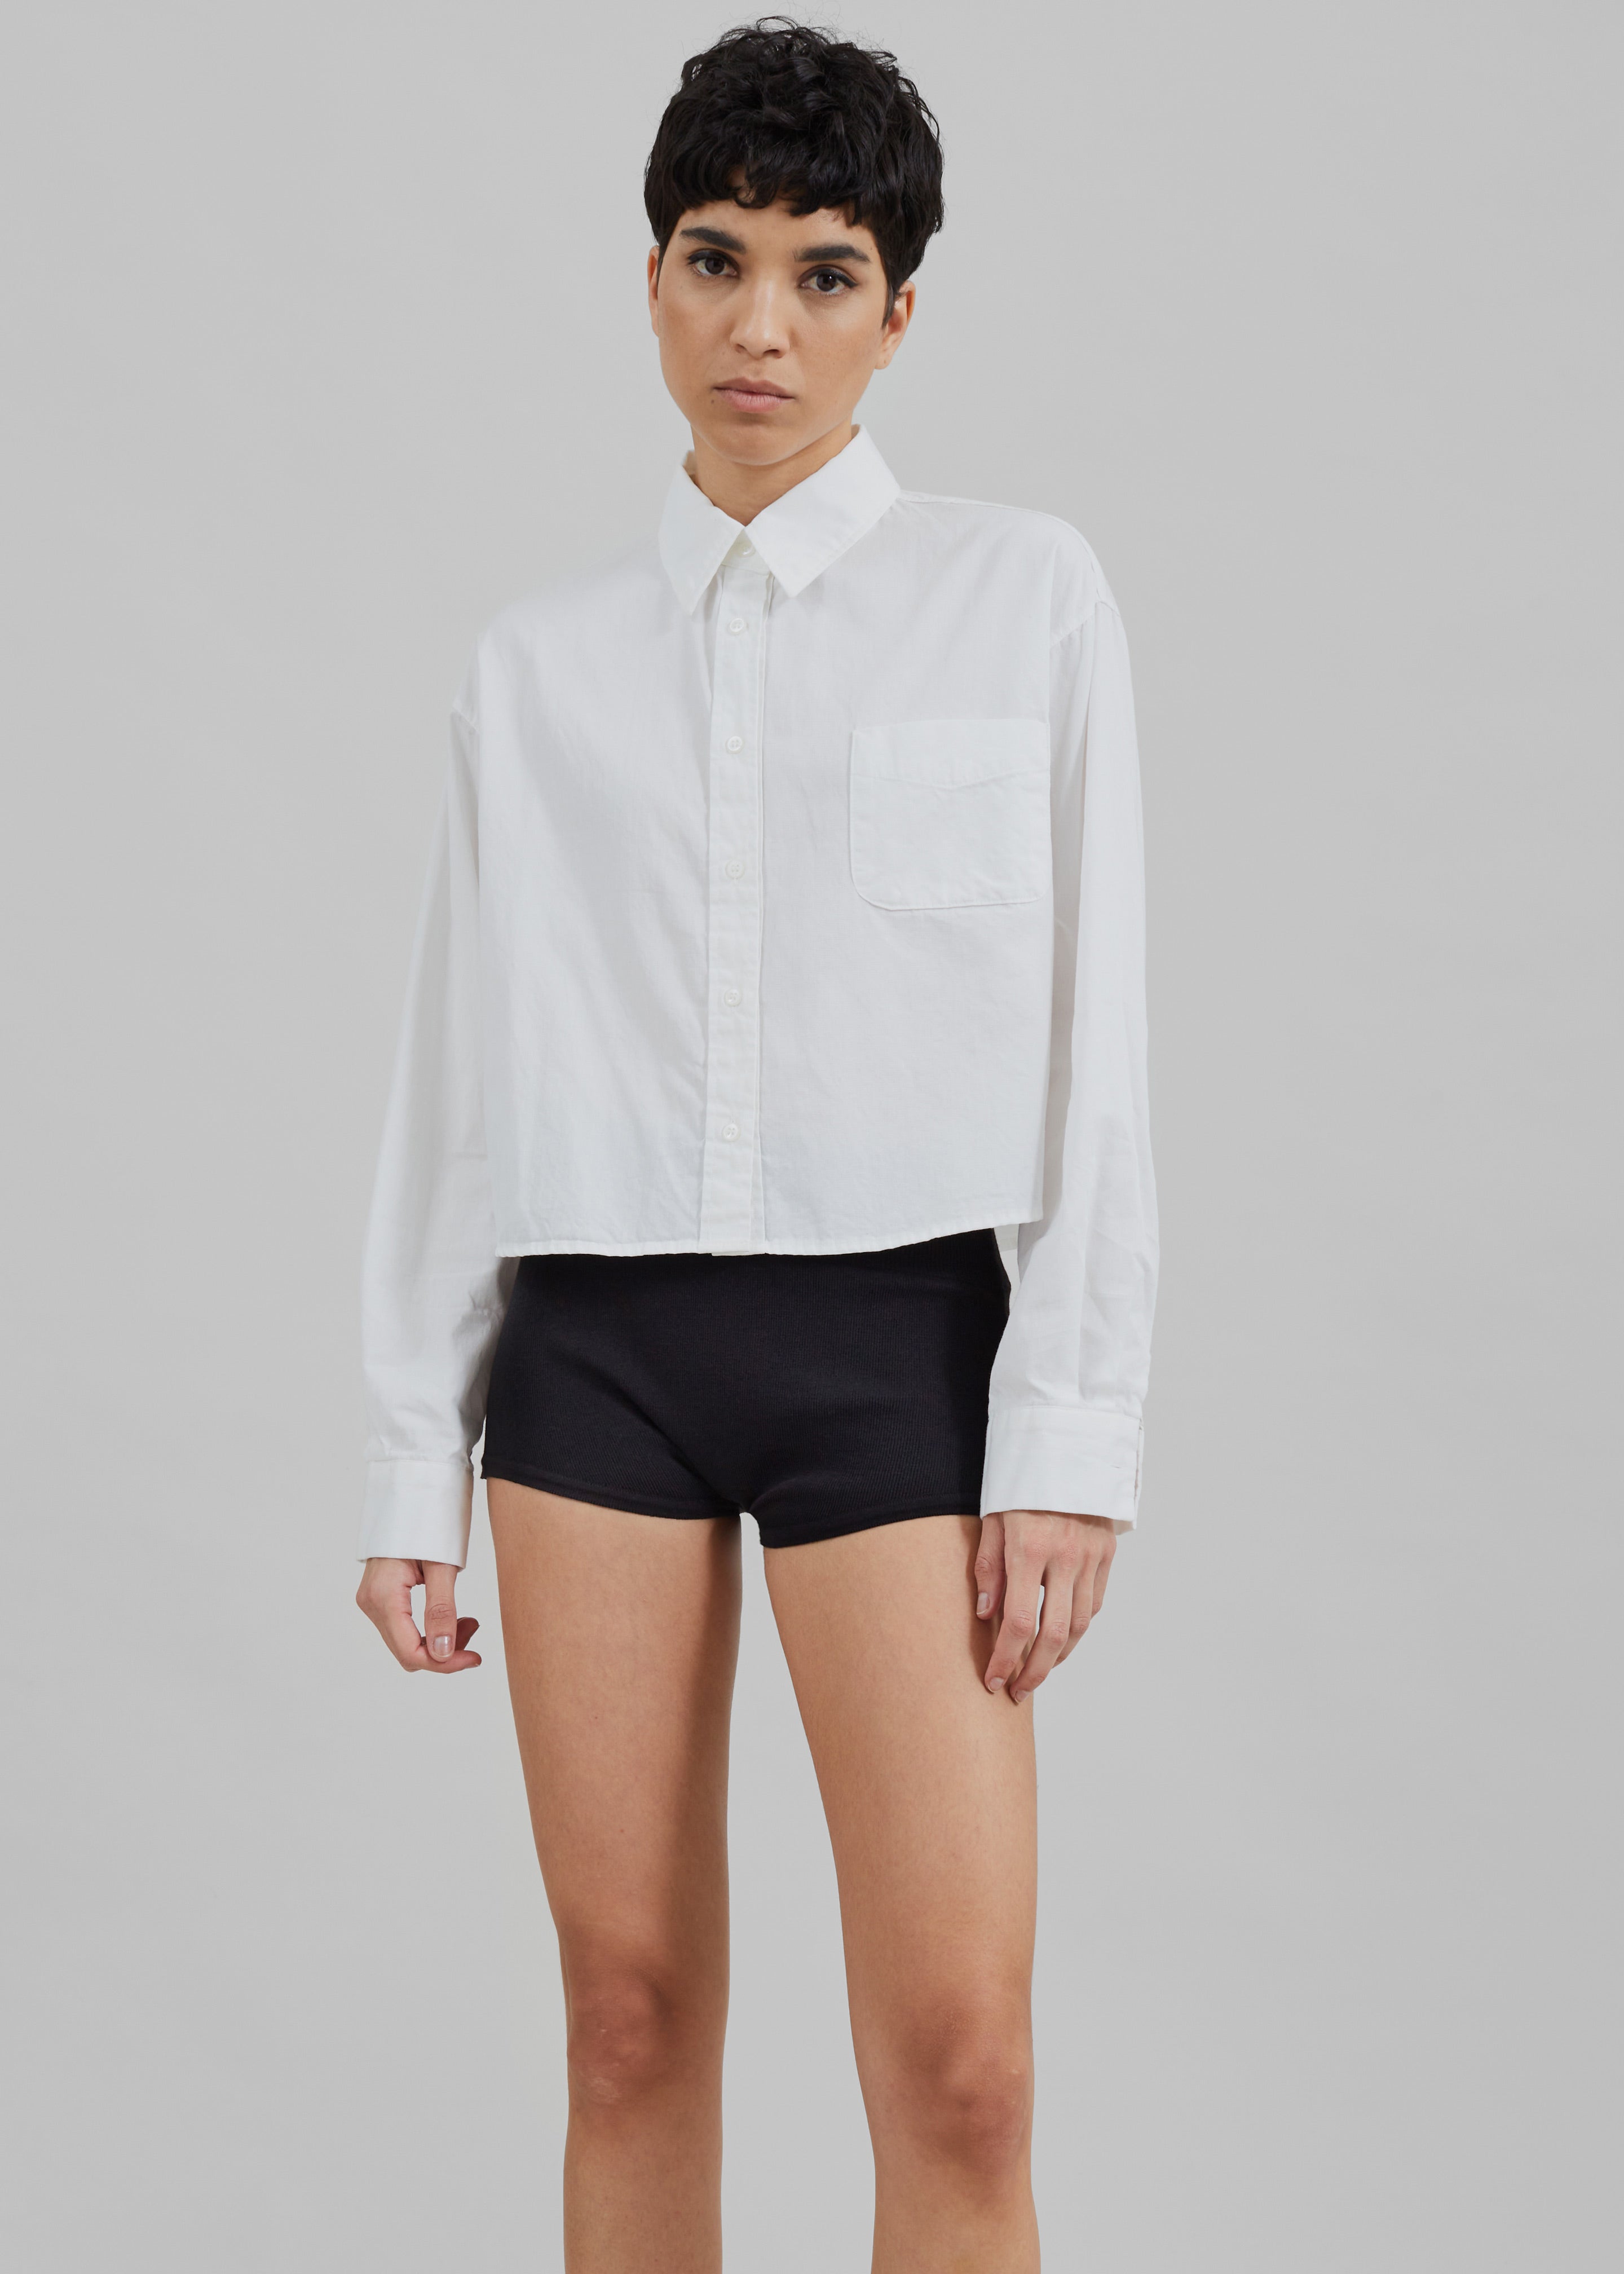 Veronica Mini Knit Shorts - Black - 6